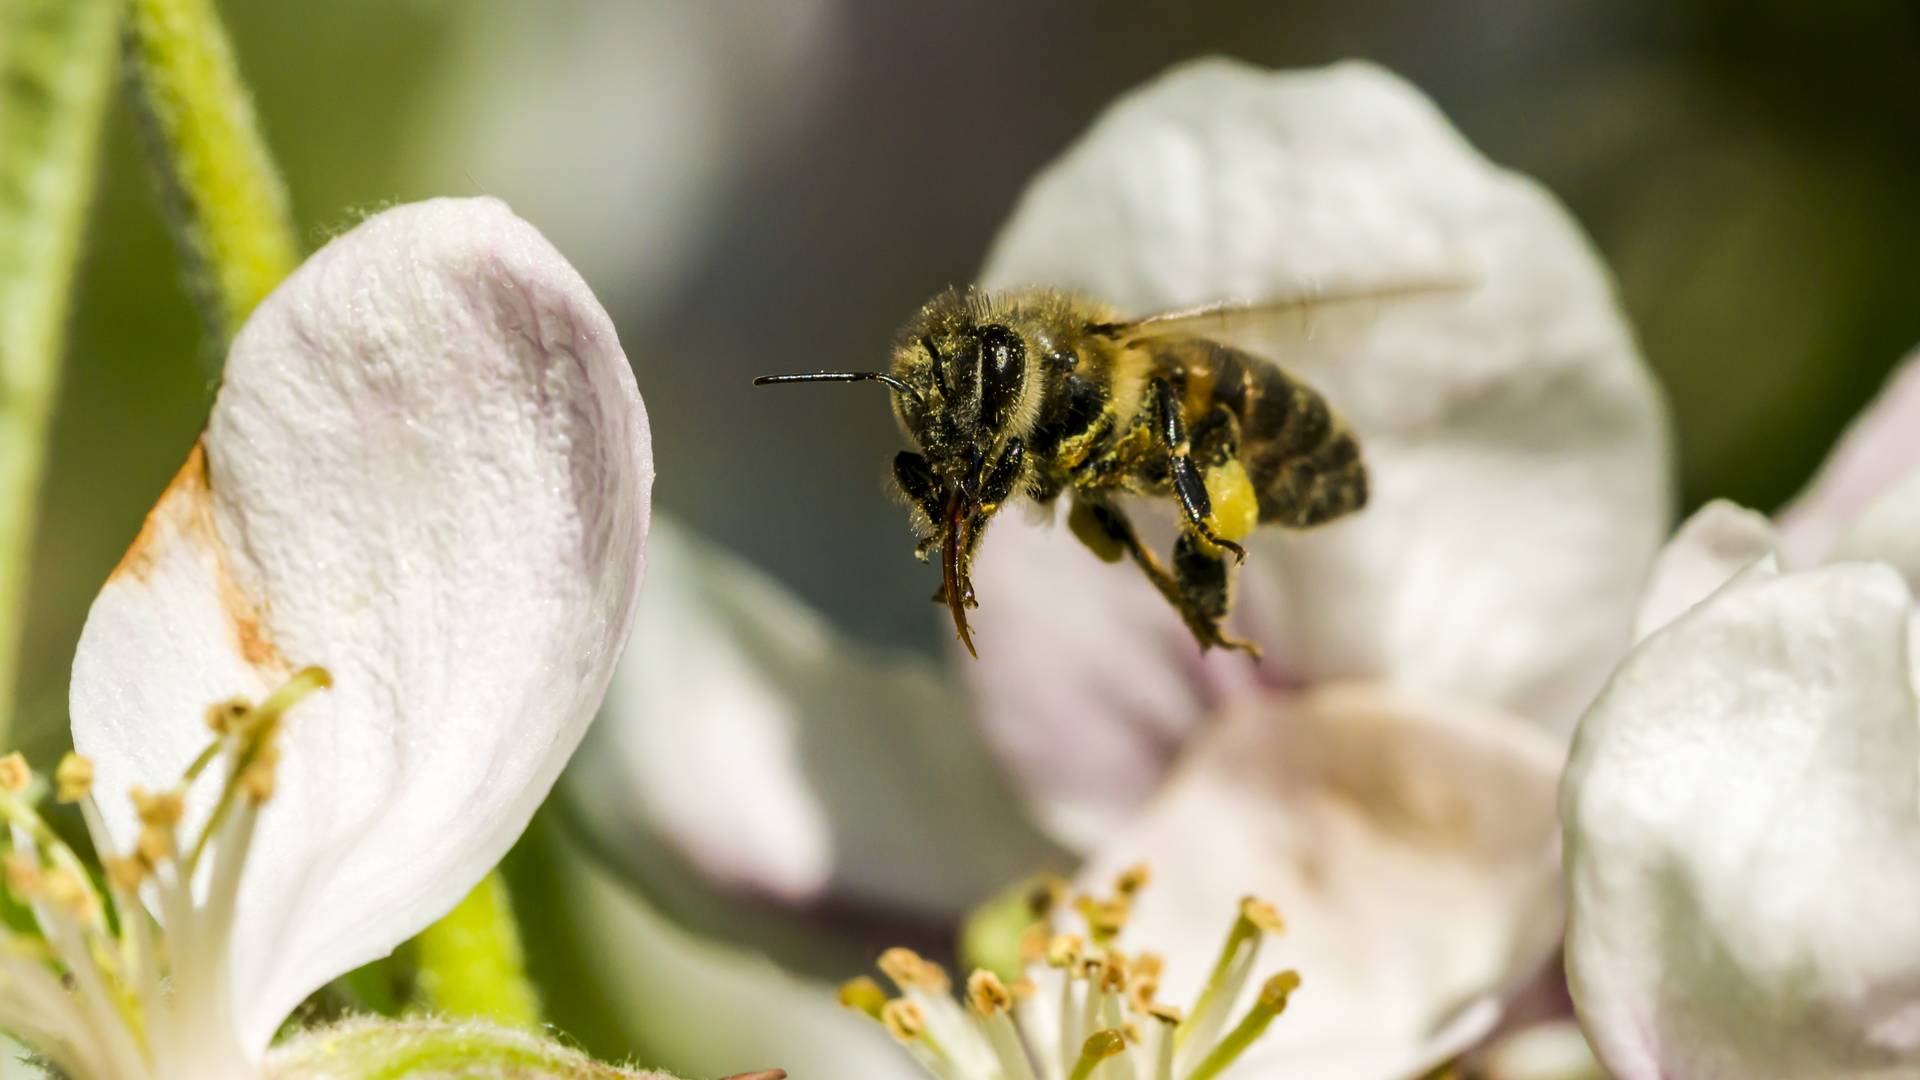 Pszczoły nie poradzą sobie bez nas. A samo stawianie miejskich uli to za mało